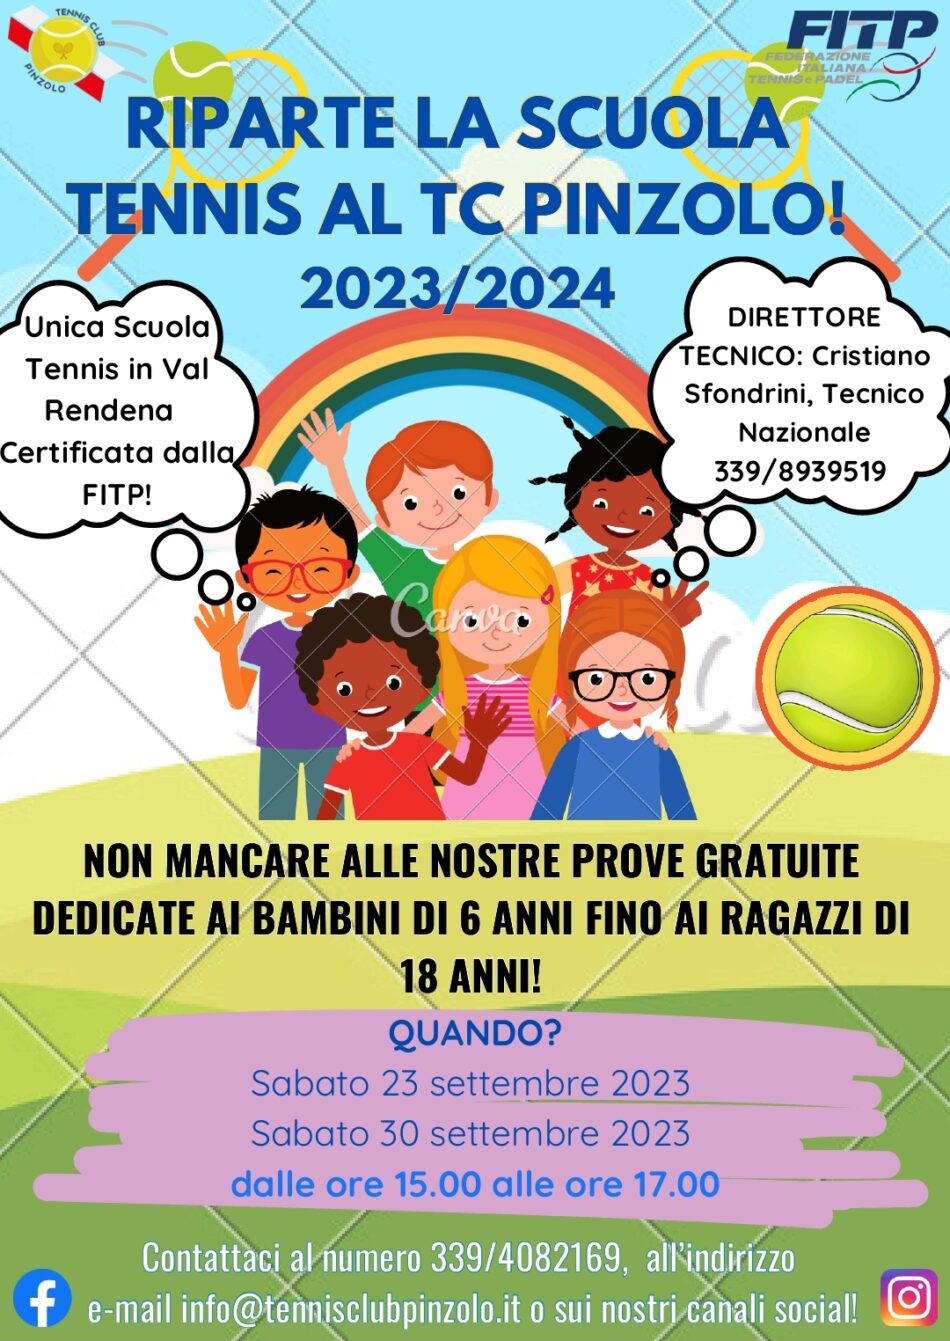 Riparte la scuola di tennis al TC Pinzolo